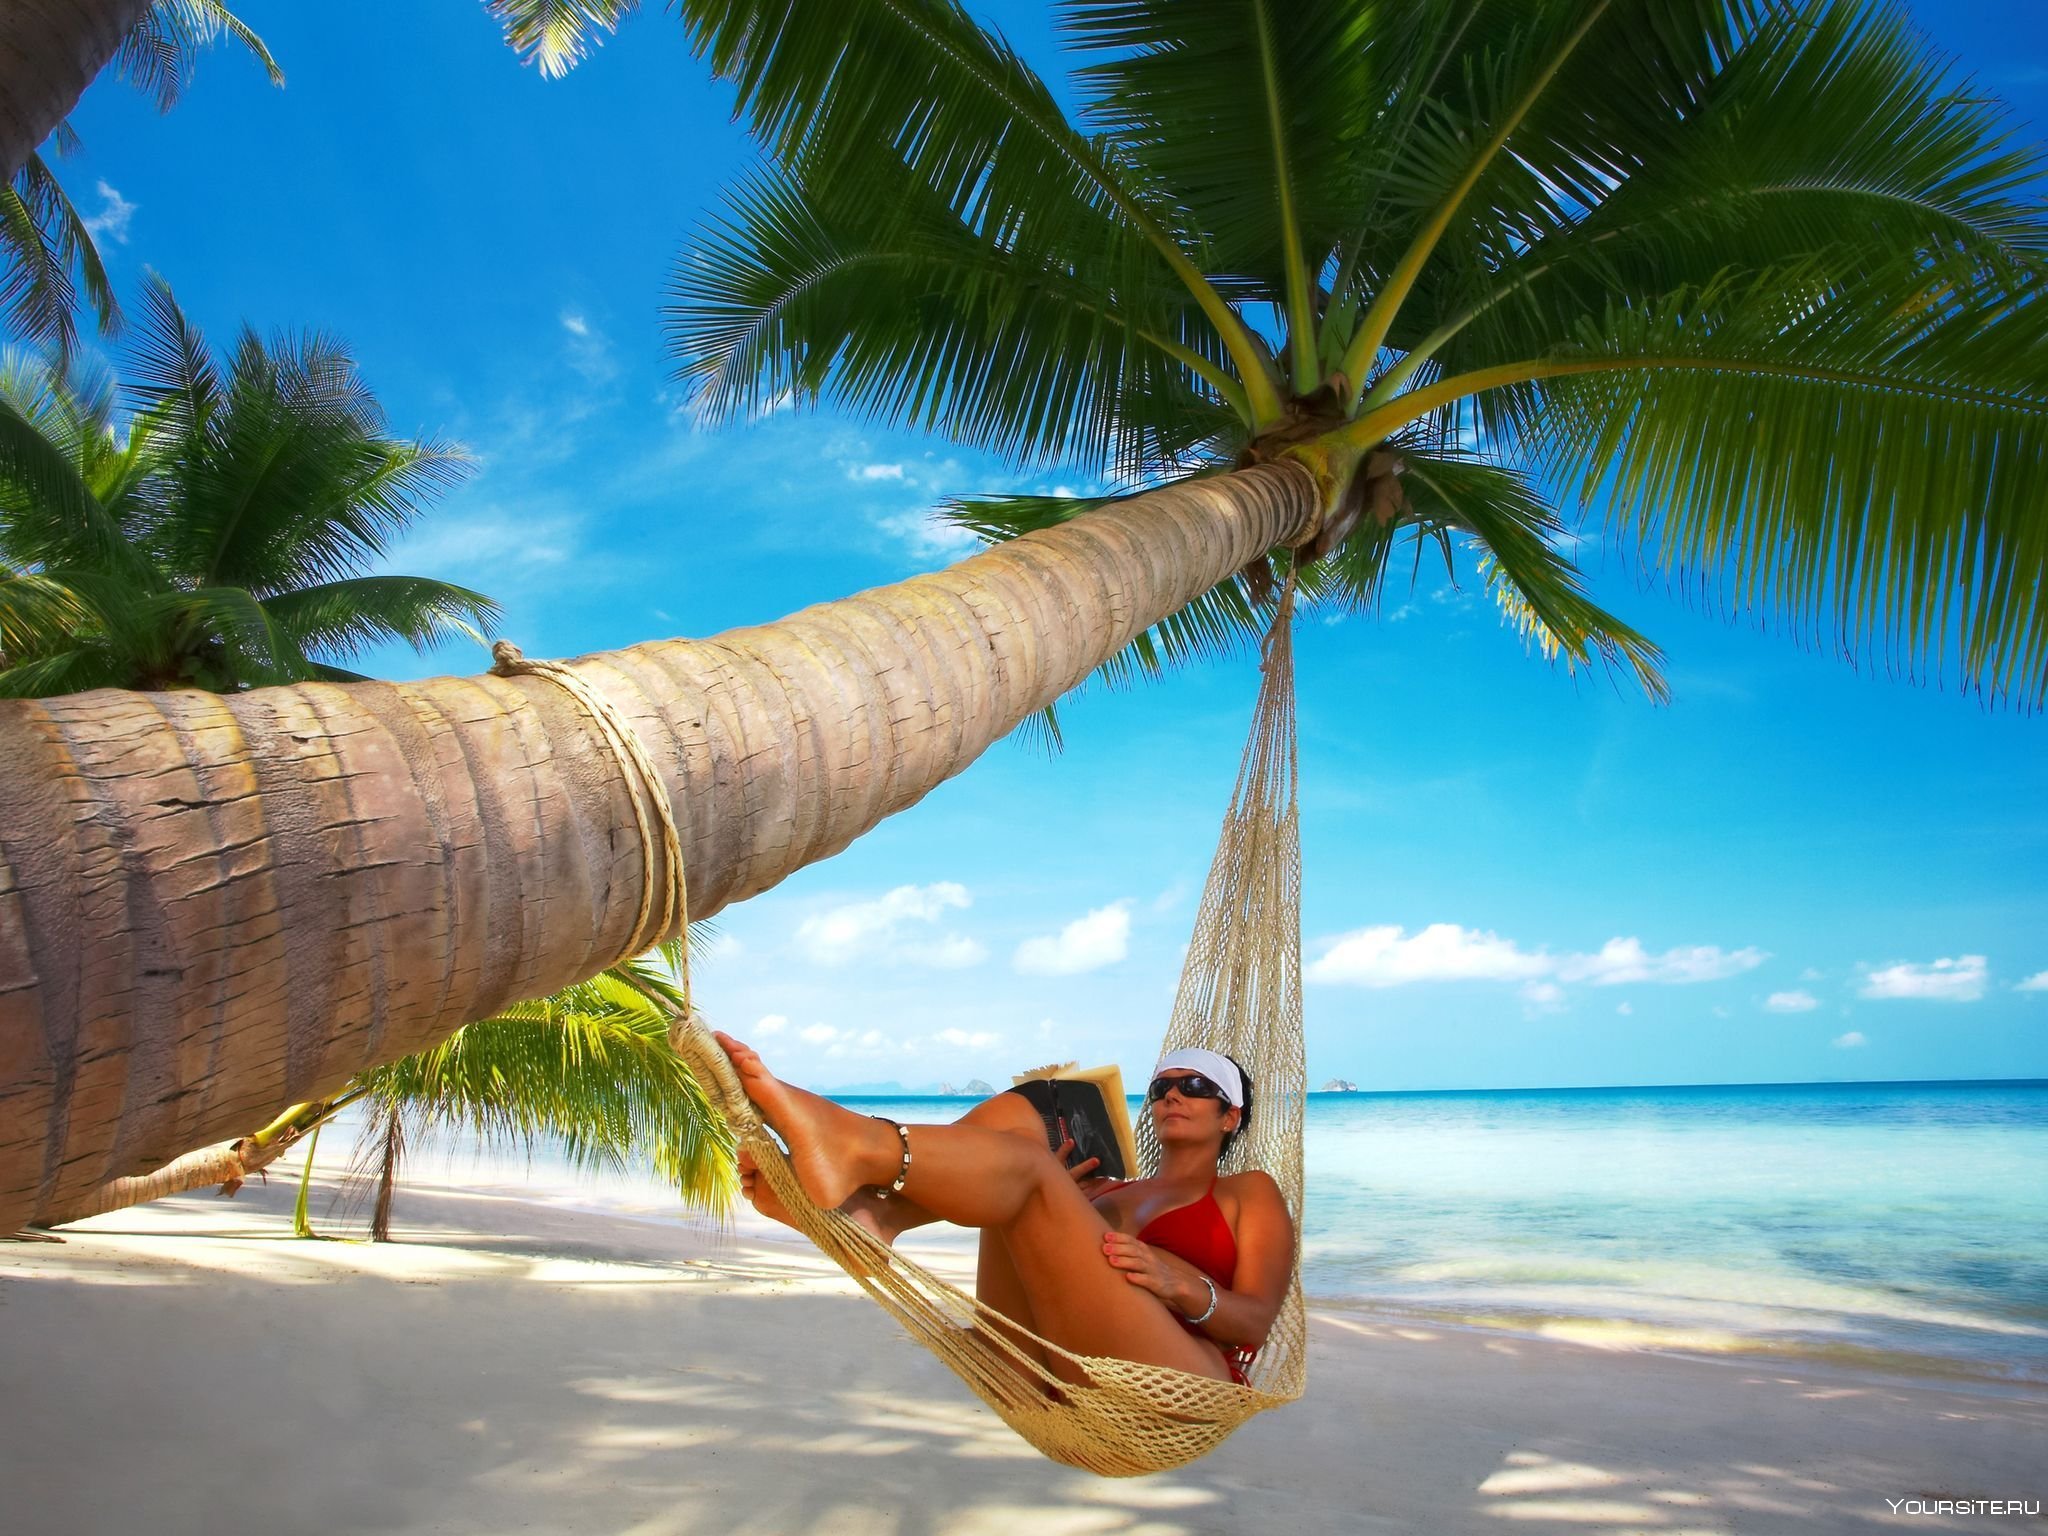 Отдых фото. Отдых картинки. Пальма Баунти с девушкой. Под пальмой. Путешествие в тропики.